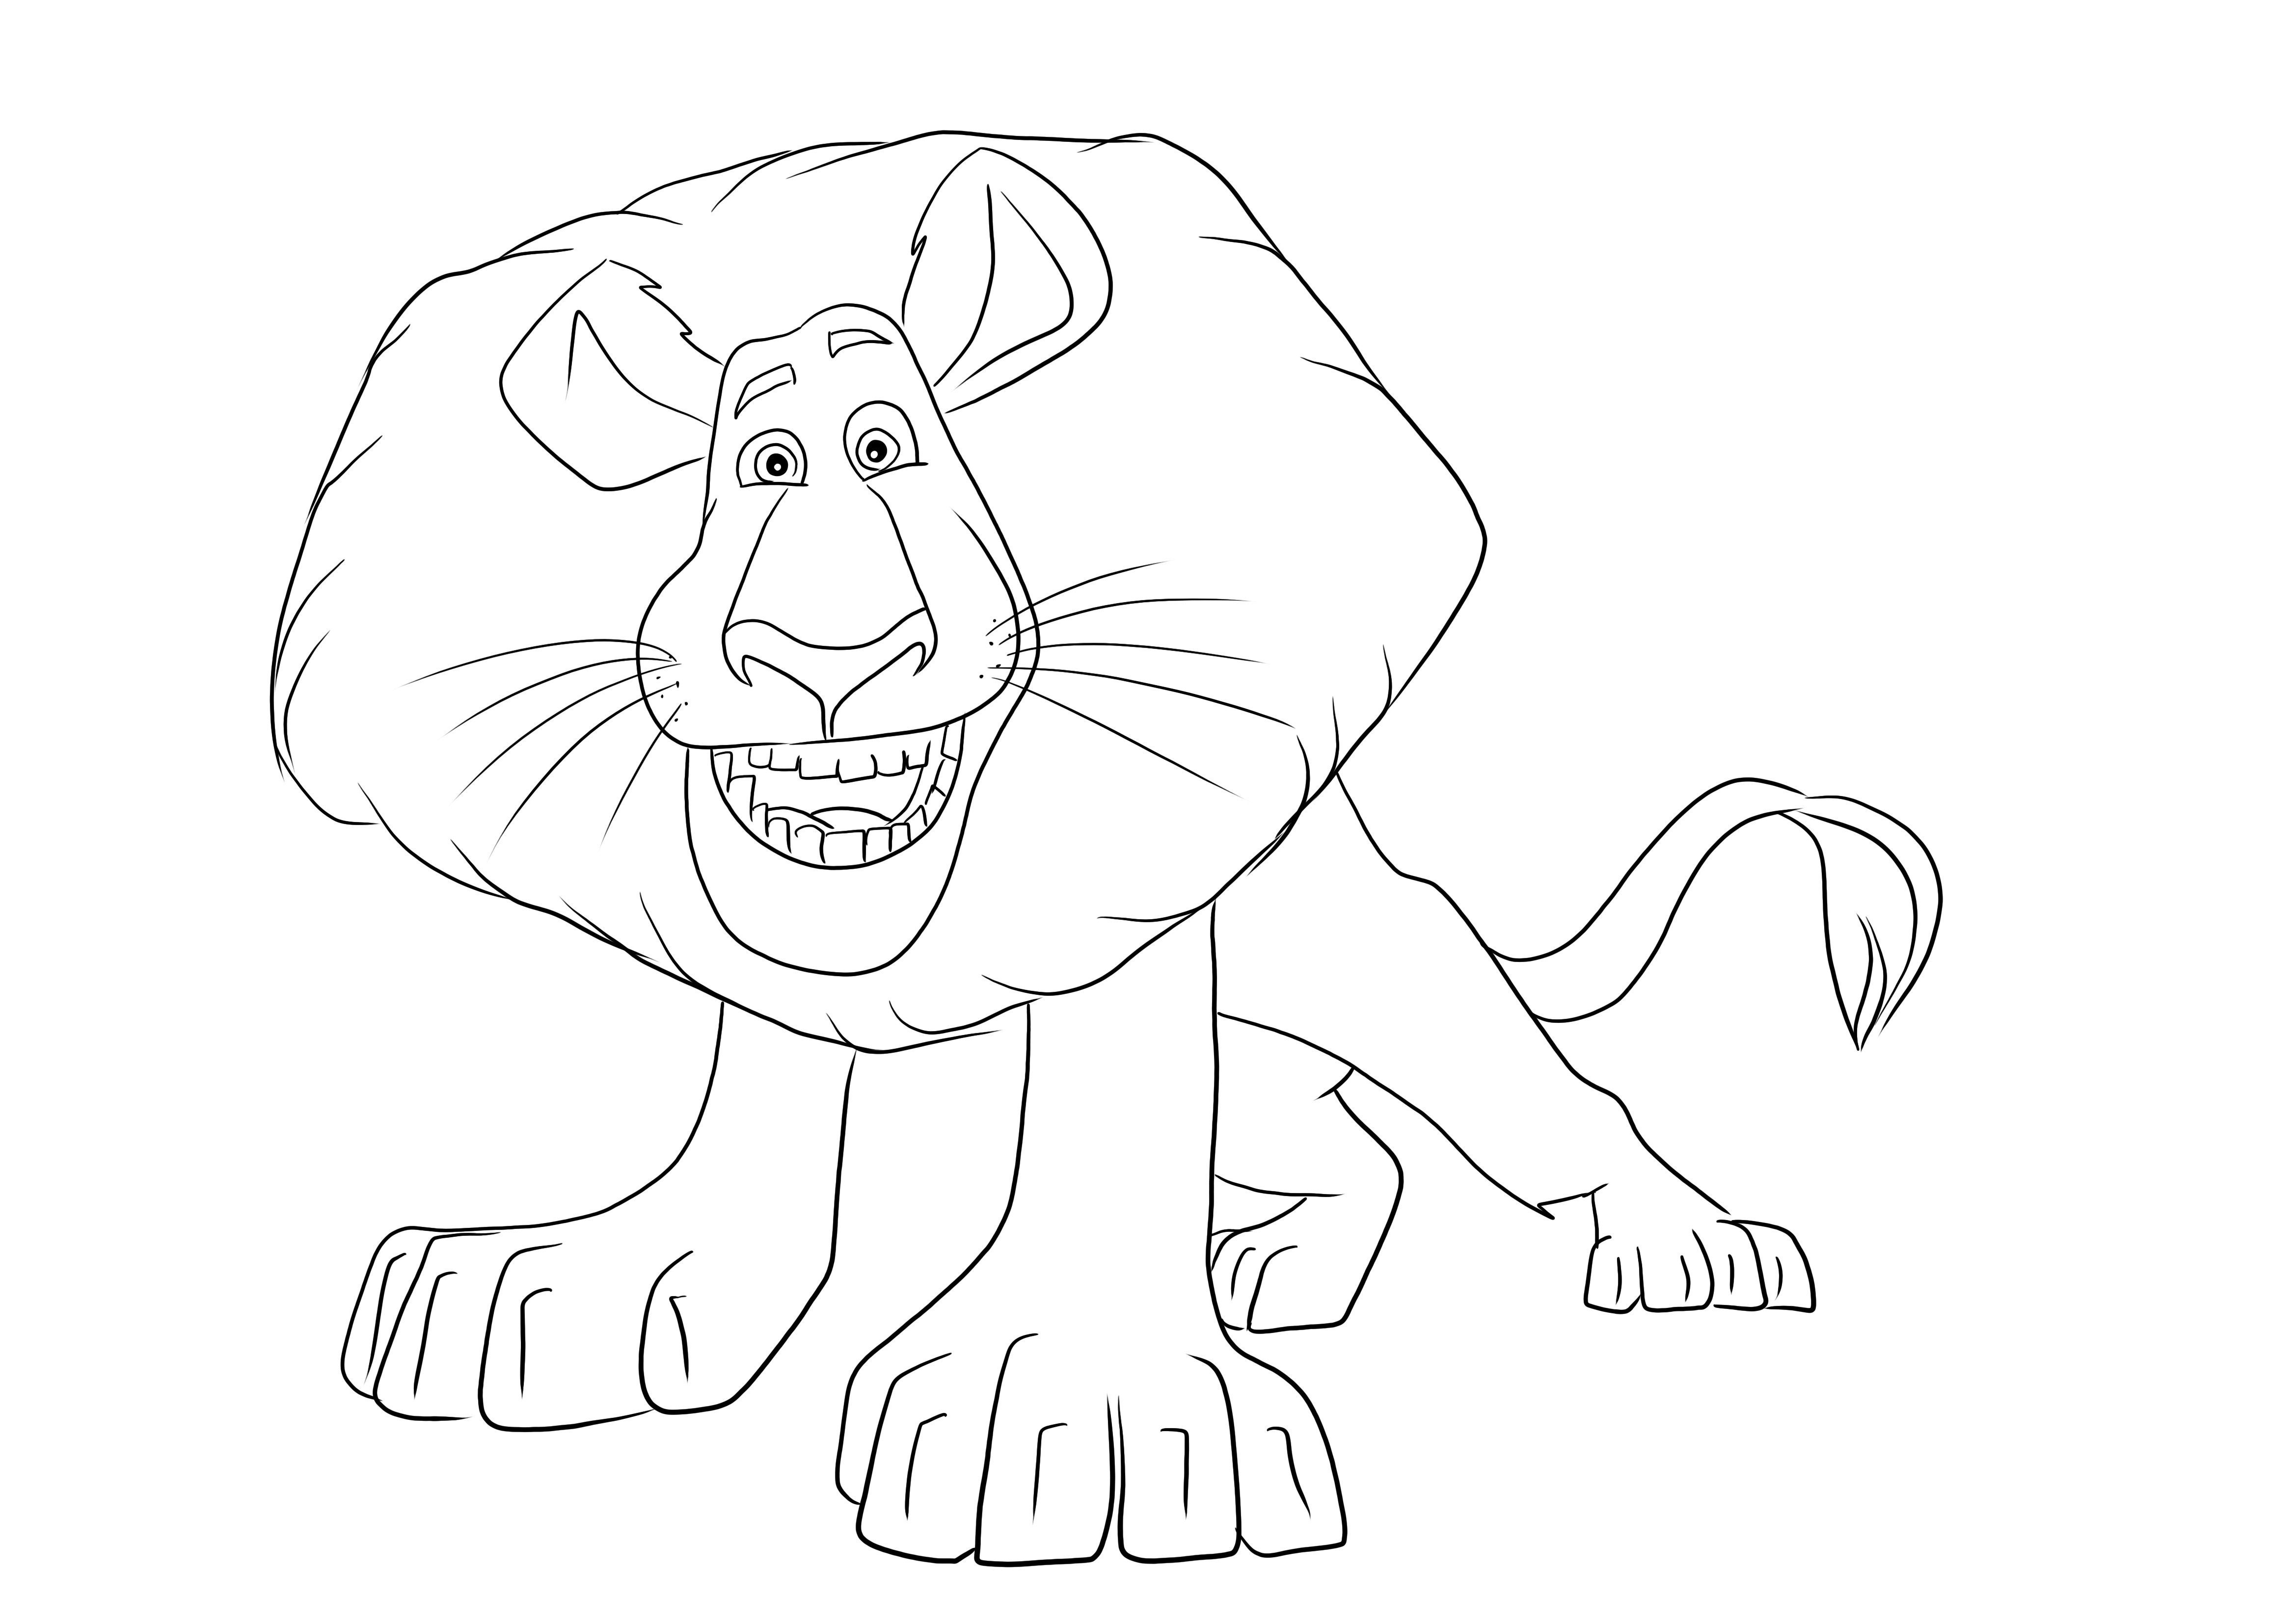 Alex le Lion à colorier et imprimer gratuitement pour que les enfants s'amusent